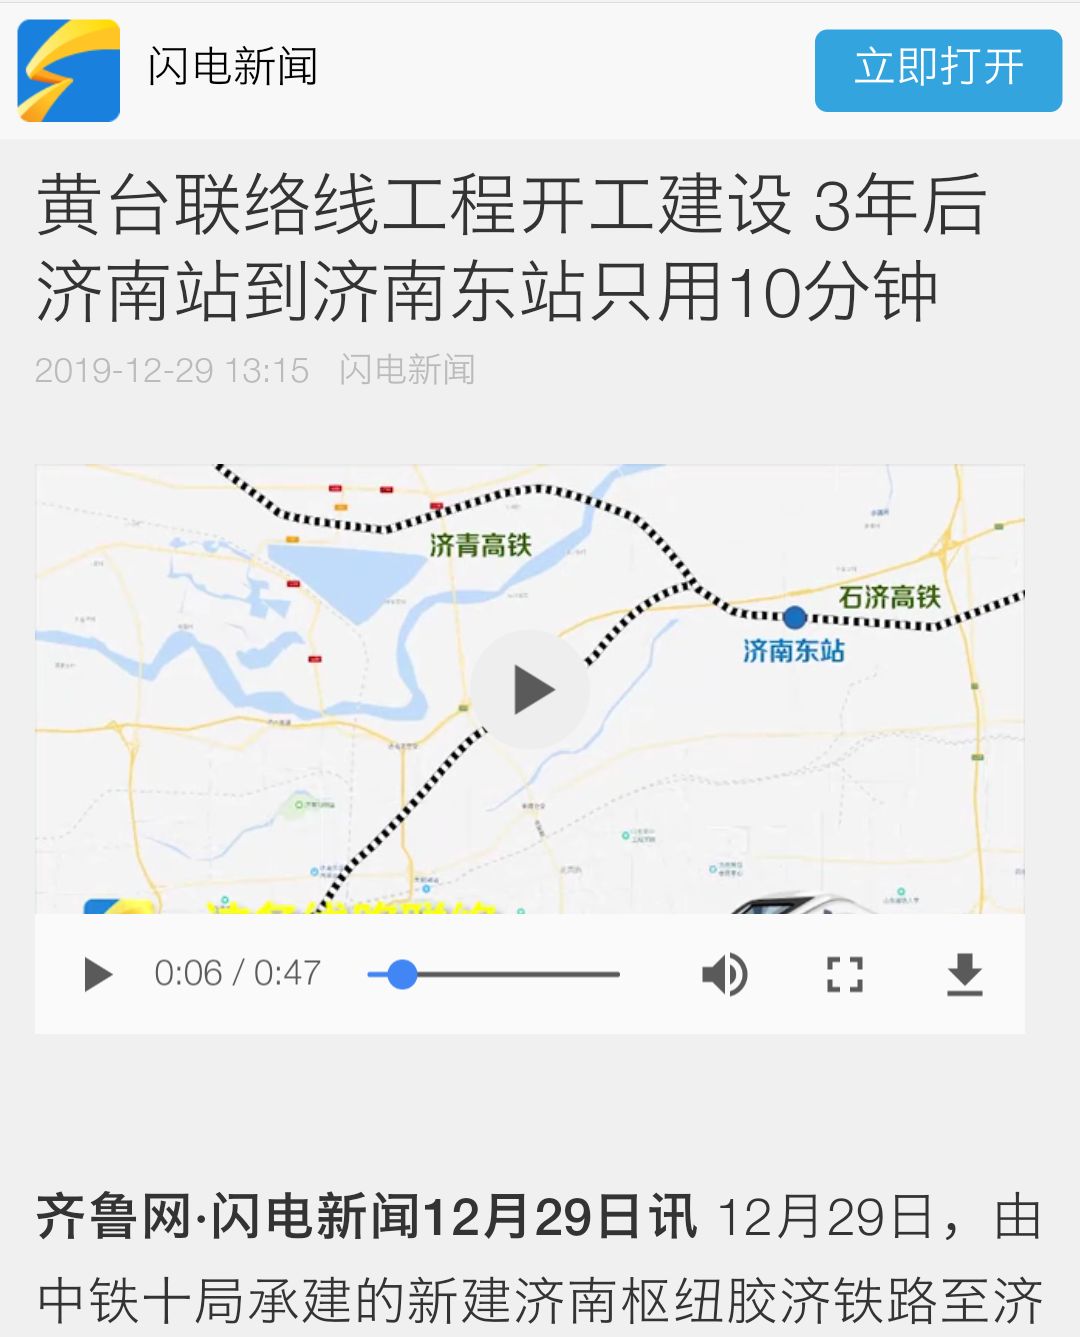 黄台联络线工程开工在即!3年后济南站将"牵手"济南东站!